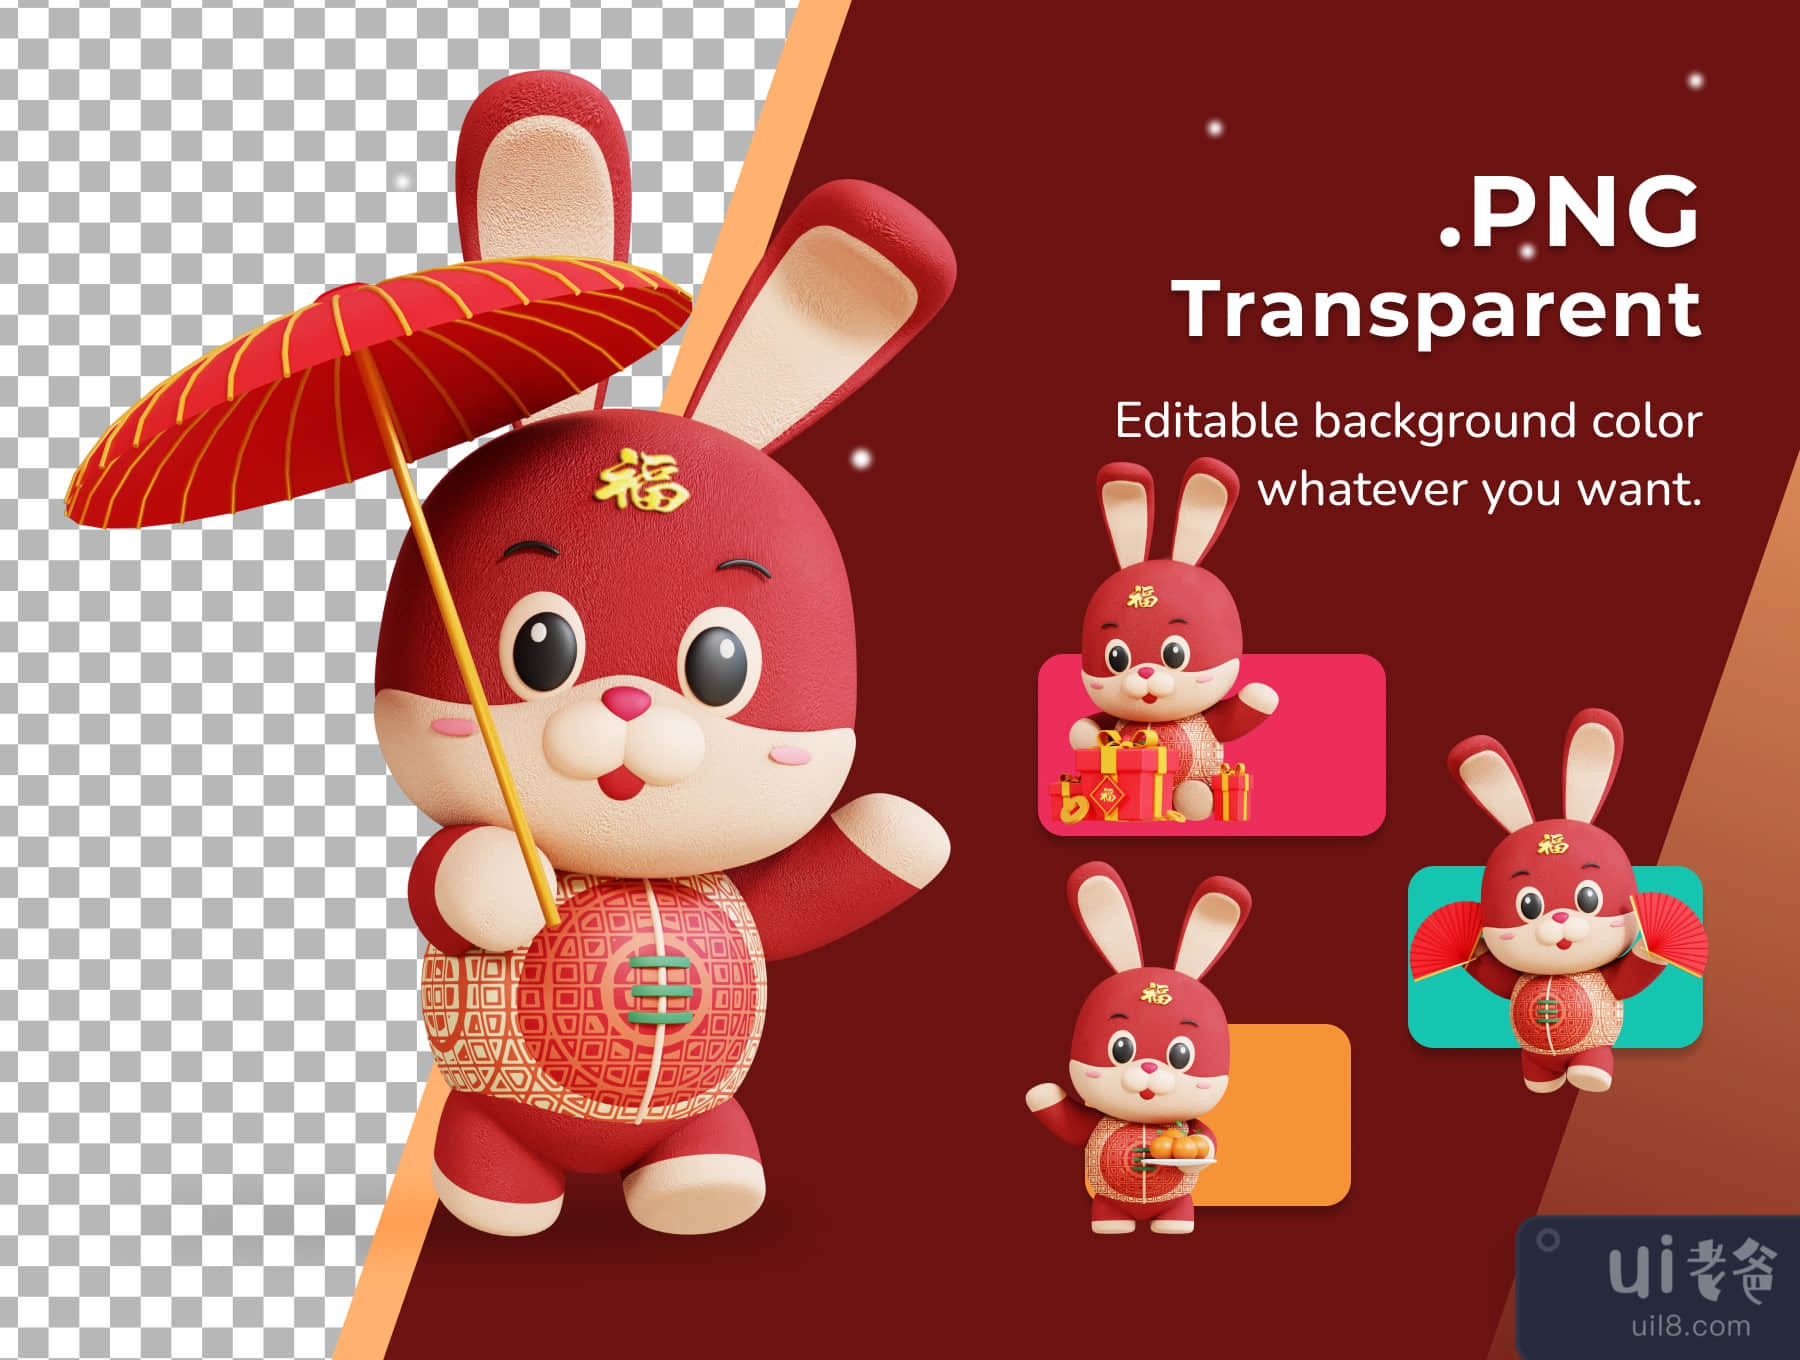 三维中国兔子吉祥物 (3D Chinese Rabbit Mascot)插图2